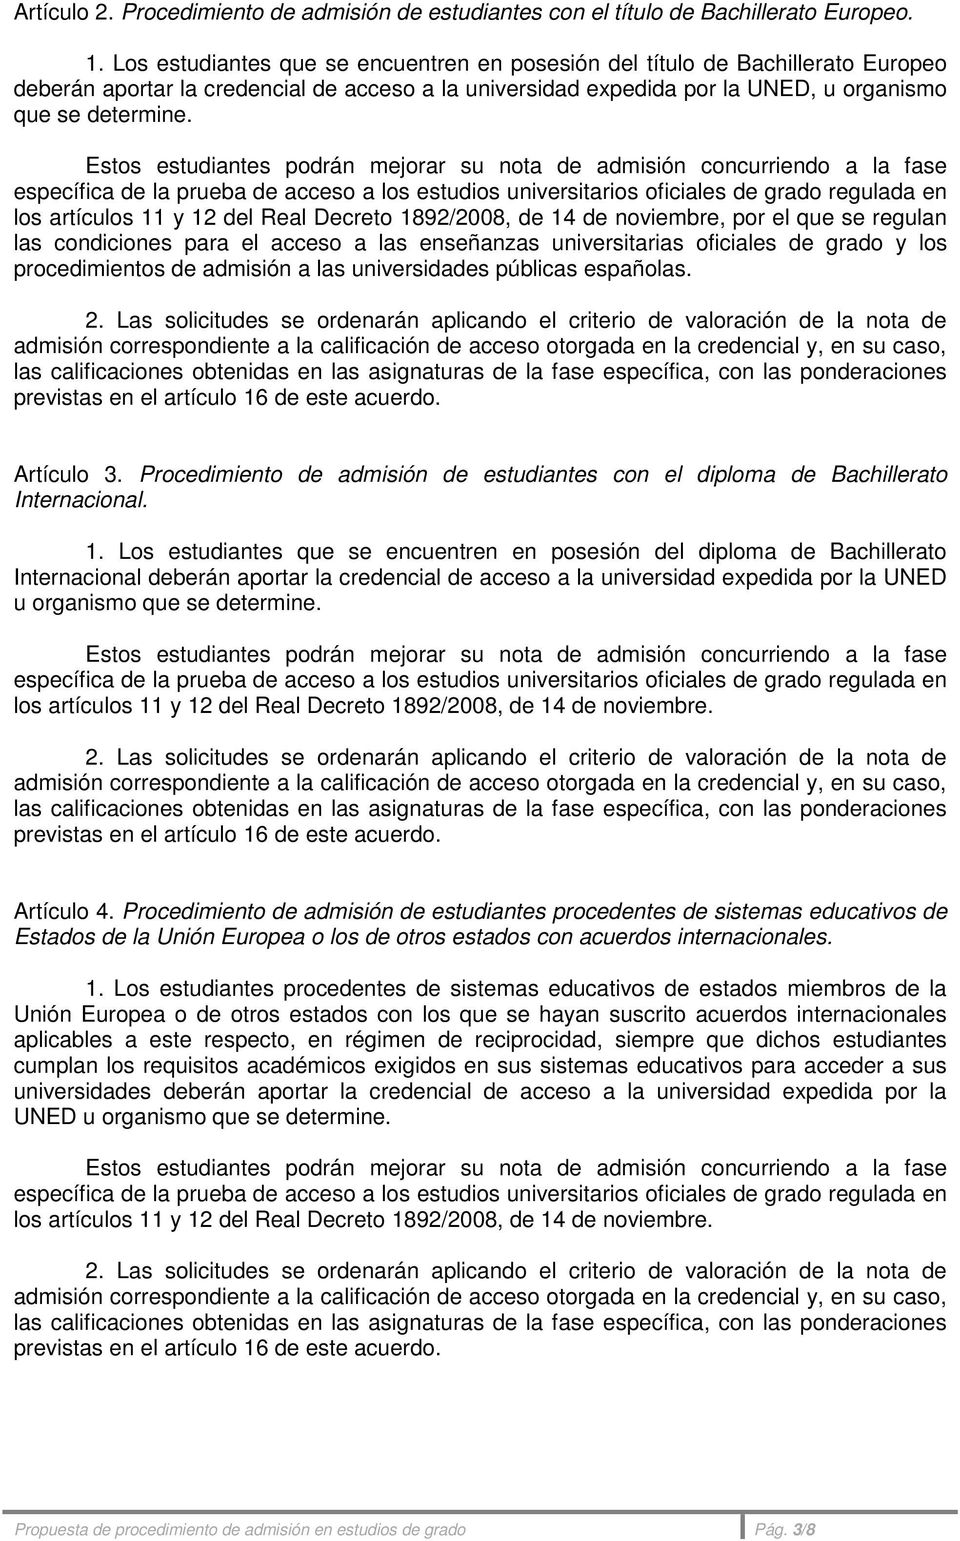 los artículos 11 y 12 del Real Decreto 1892/2008, de 14 de noviembre, por el que se regulan las condiciones para el acceso a las enseñanzas universitarias oficiales de grado y los procedimientos de